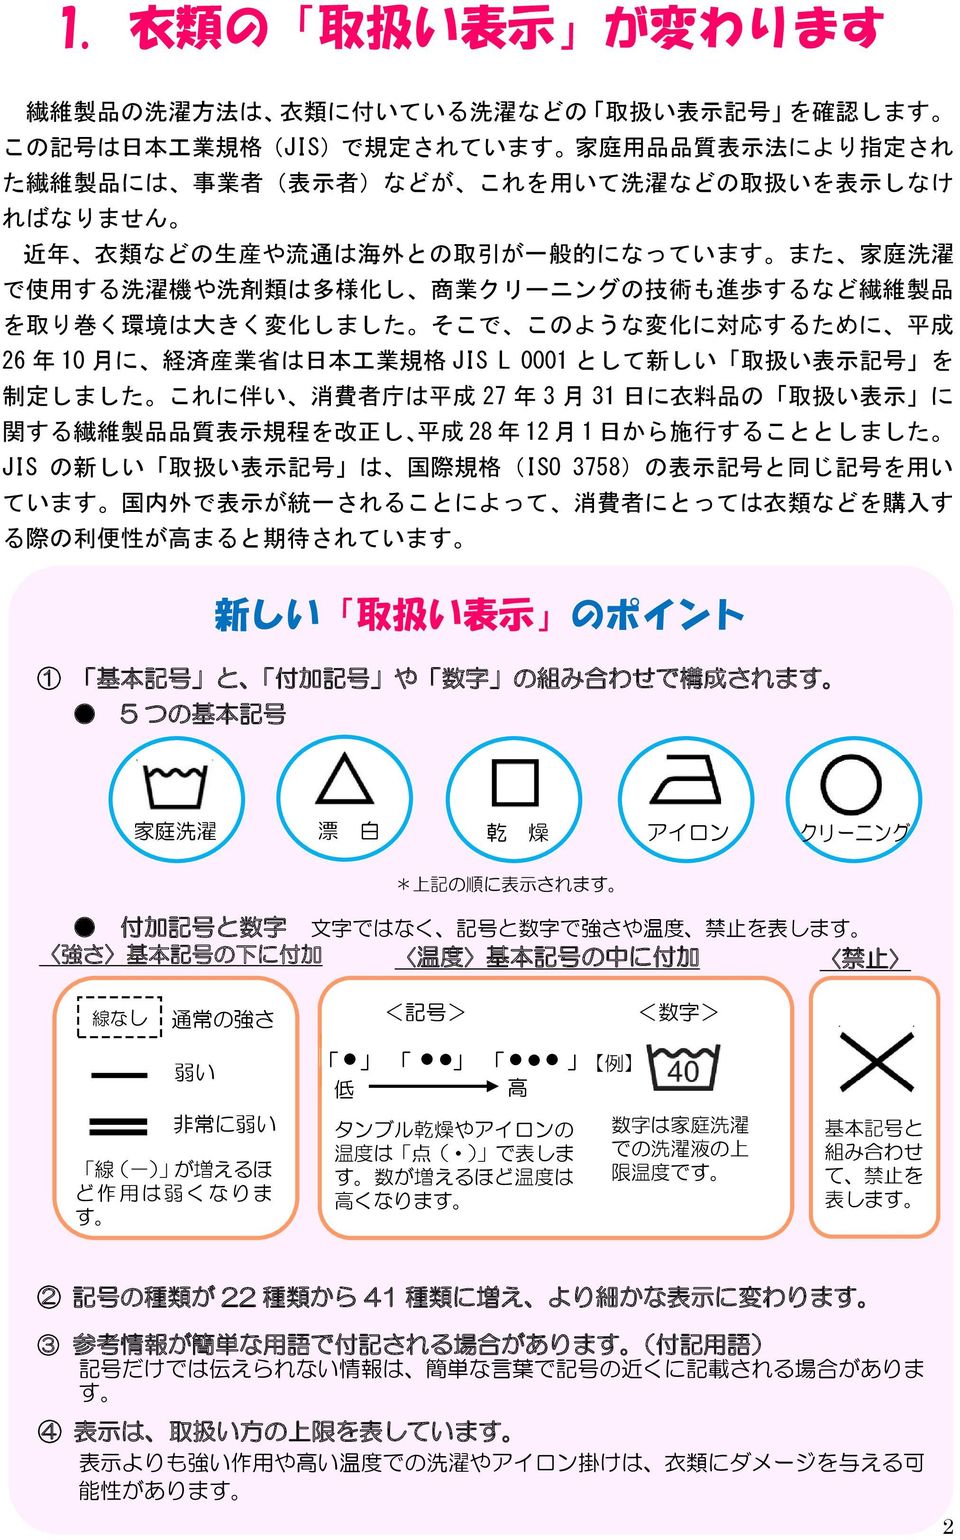 このような 変 化 に 対 応 するために 平 成 26 年 10 月 に 経 済 産 業 省 は 日 本 工 業 規 格 JIS L 0001 として 新 しい 取 扱 い 表 示 記 号 を 制 定 しました これに 伴 い 消 費 者 庁 は 平 成 27 年 3 月 31 日 に 衣 料 品 の 取 扱 い 表 示 に 関 する 繊 維 製 品 品 質 表 示 規 程 を 改 正 し 平